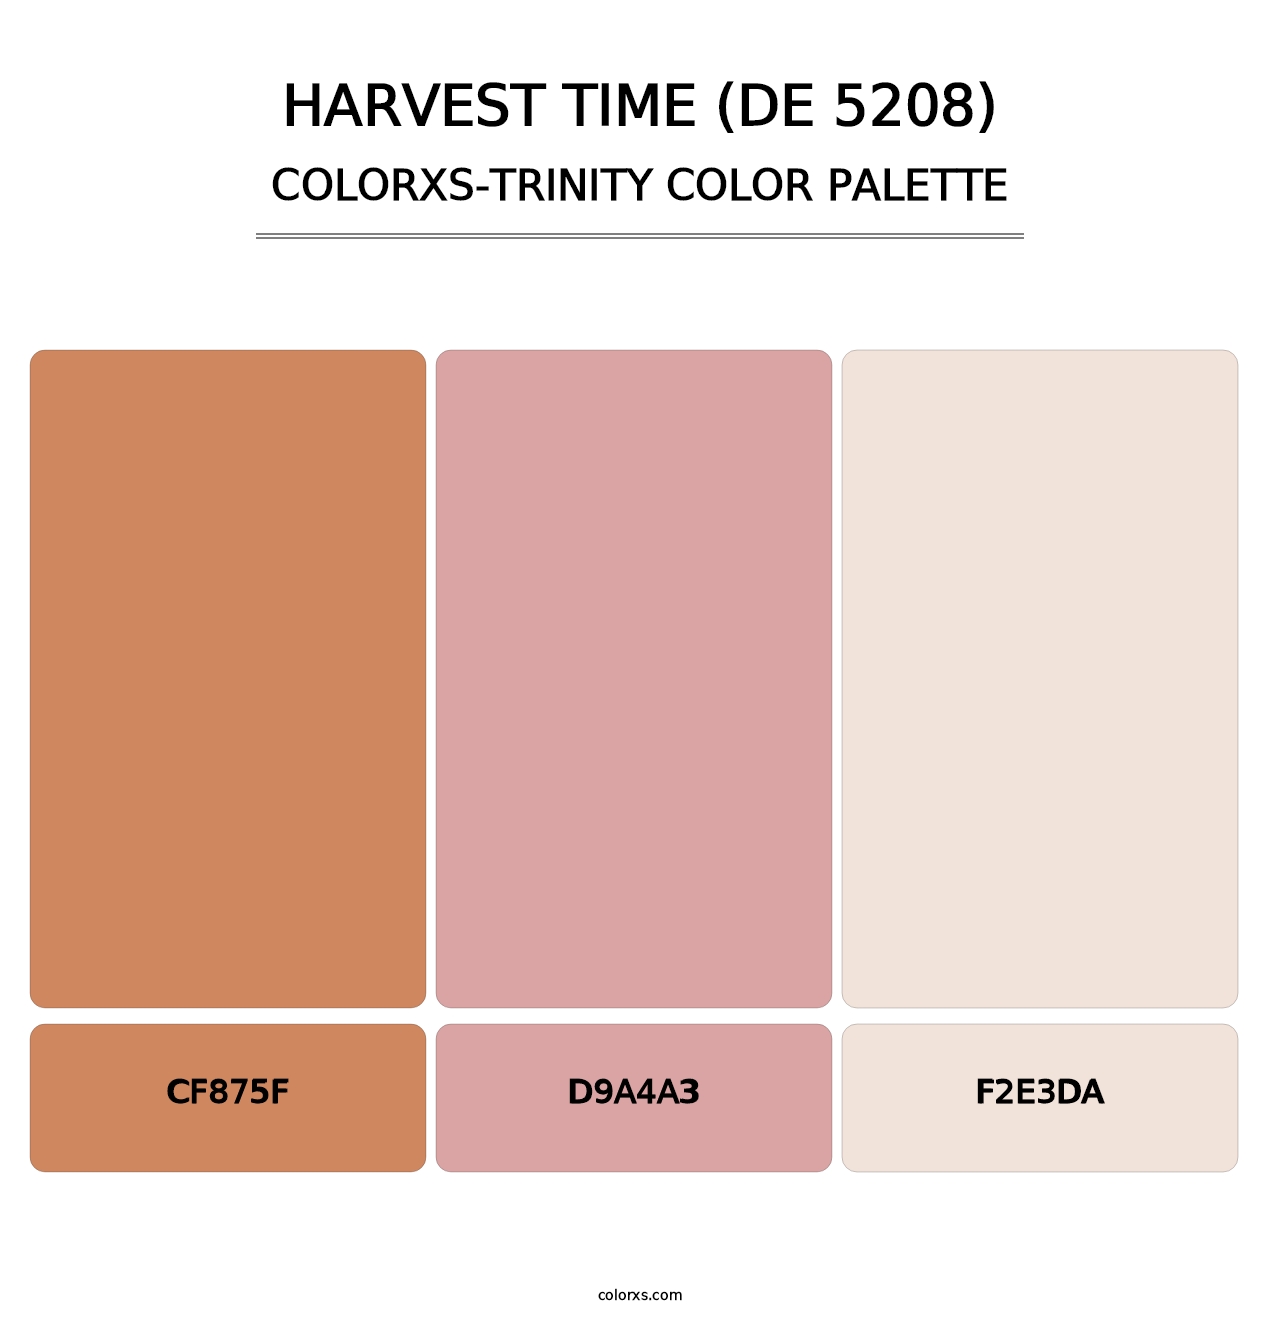 Harvest Time (DE 5208) - Colorxs Trinity Palette